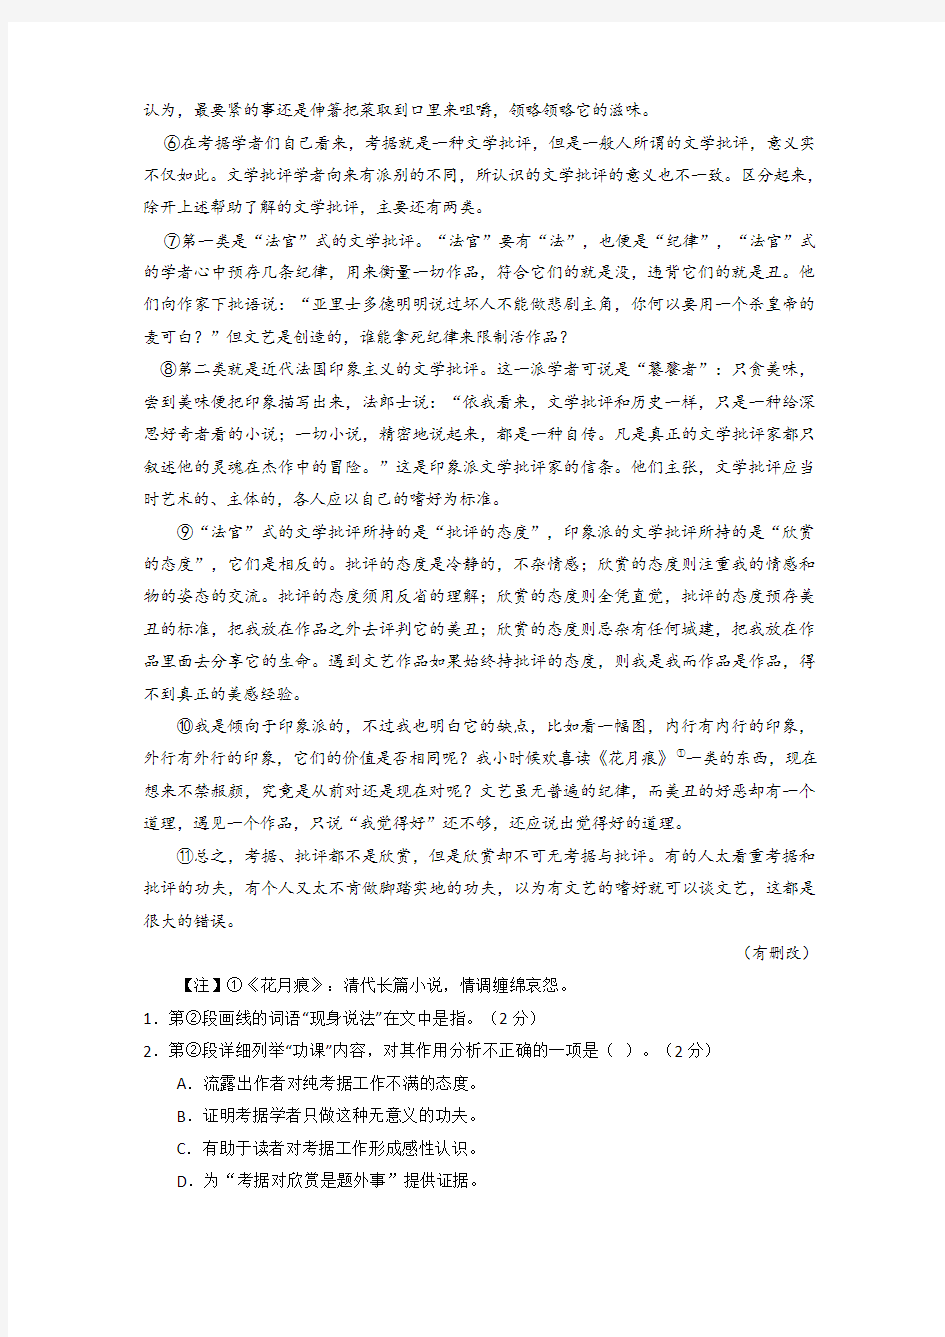 2016年高考上海卷语文试题及答案